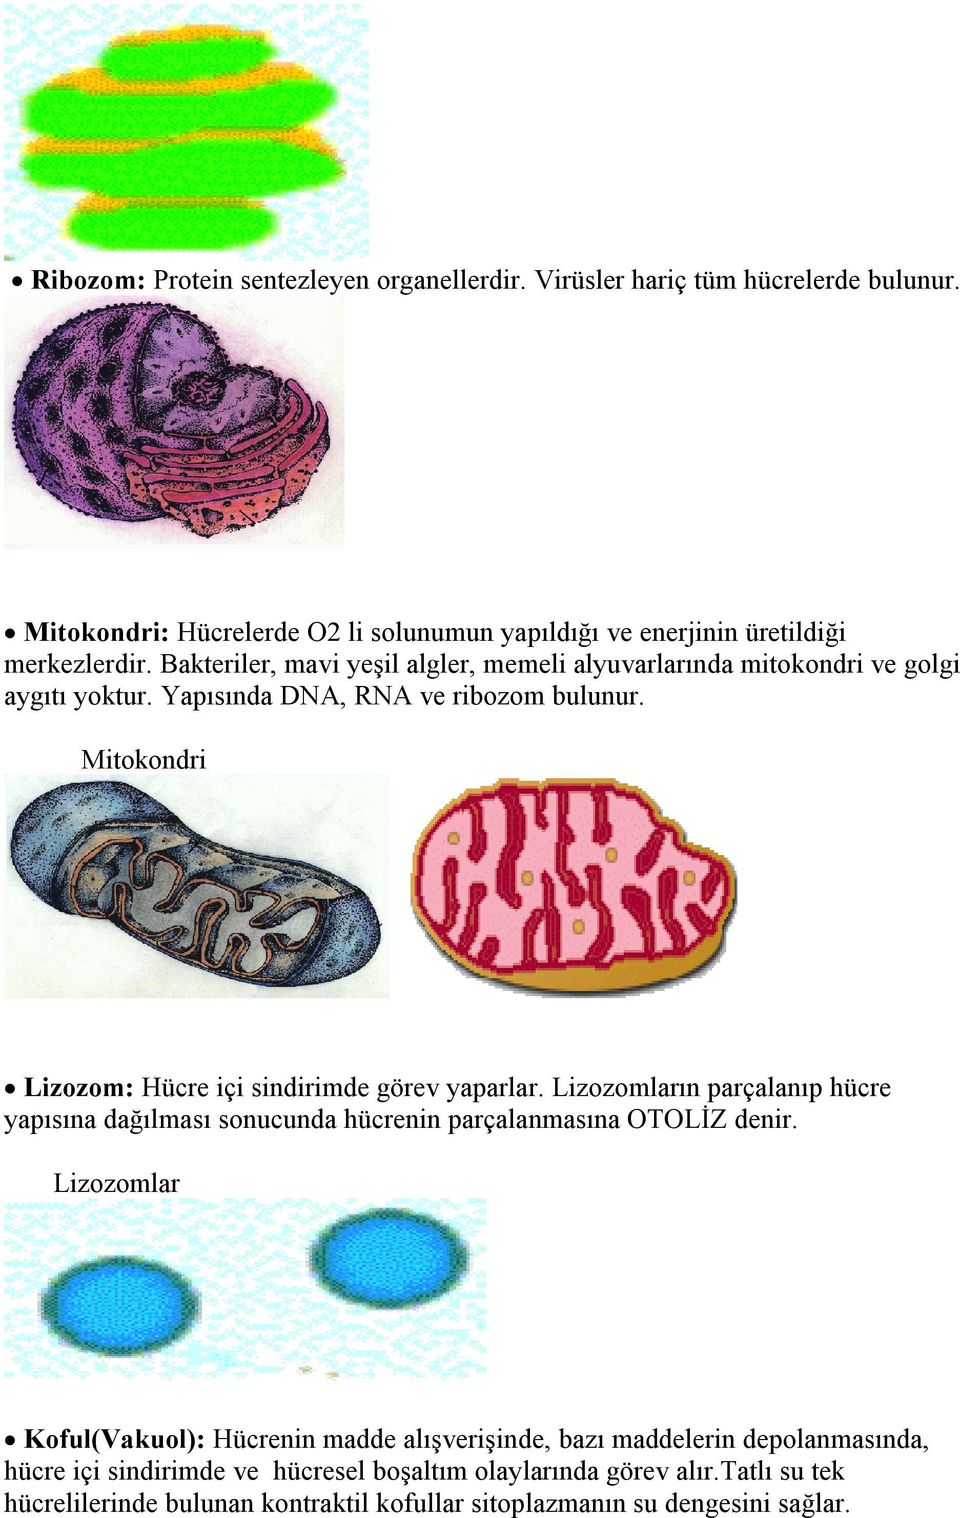 Mitokondri Lizozom: Hücre içi sindirimde görev yaparlar. Lizozomların parçalanıp hücre yapısına dağılması sonucunda hücrenin parçalanmasına OTOLİZ denir.